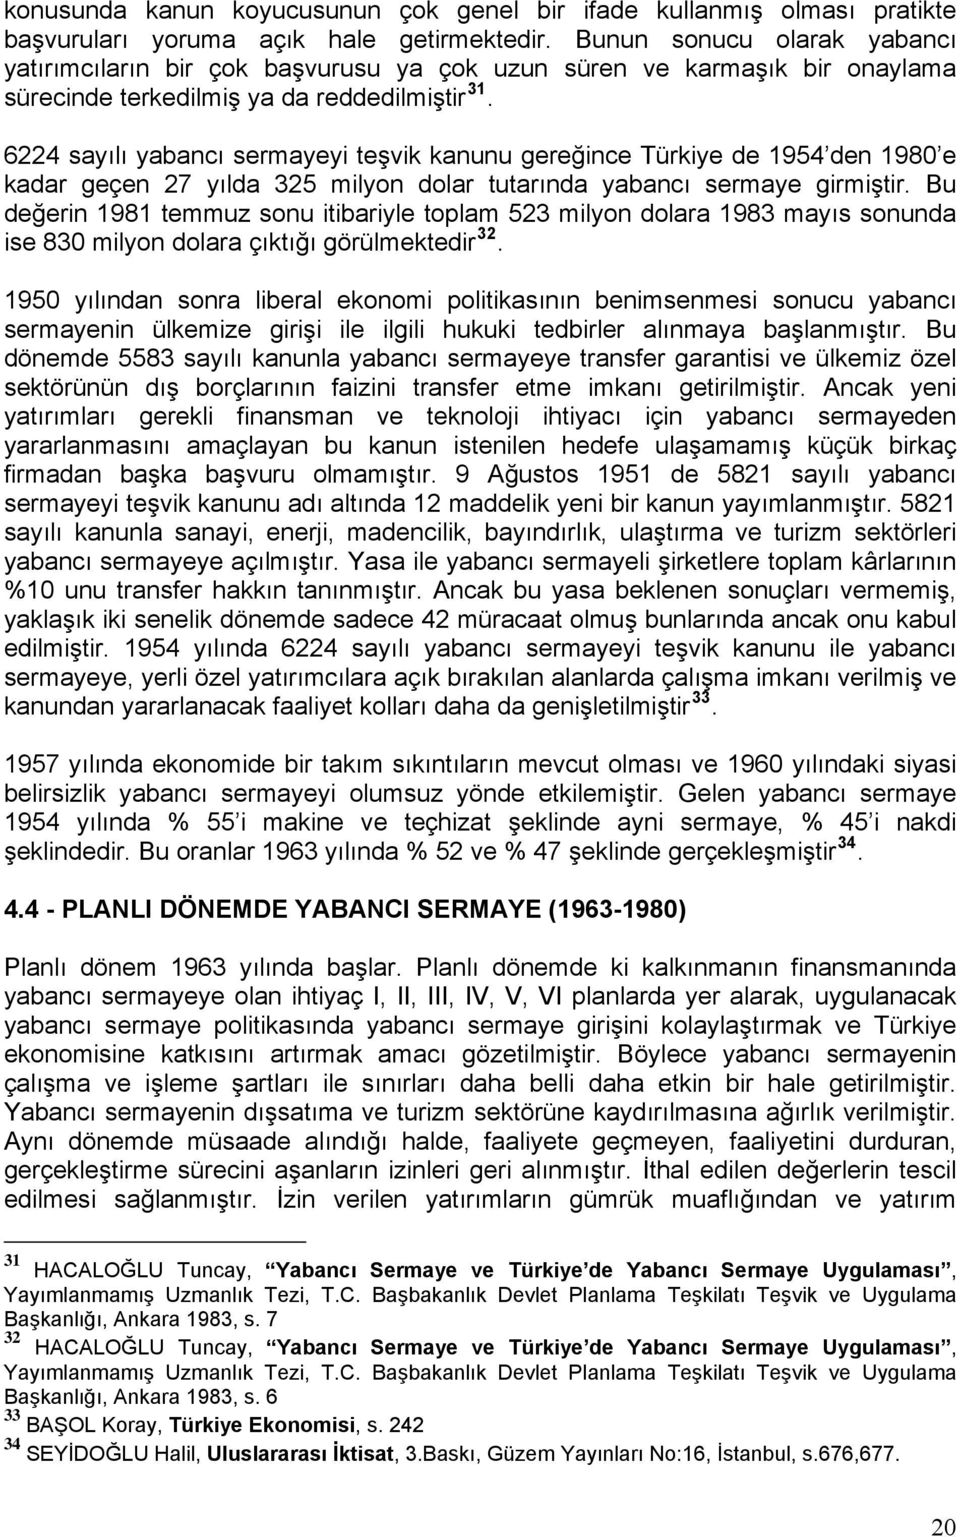 6224 sayılı yabancı sermayeyi teşvik kanunu gereğince Türkiye de 1954 den 1980 e kadar geçen 27 yılda 325 milyon dolar tutarında yabancı sermaye girmiştir.